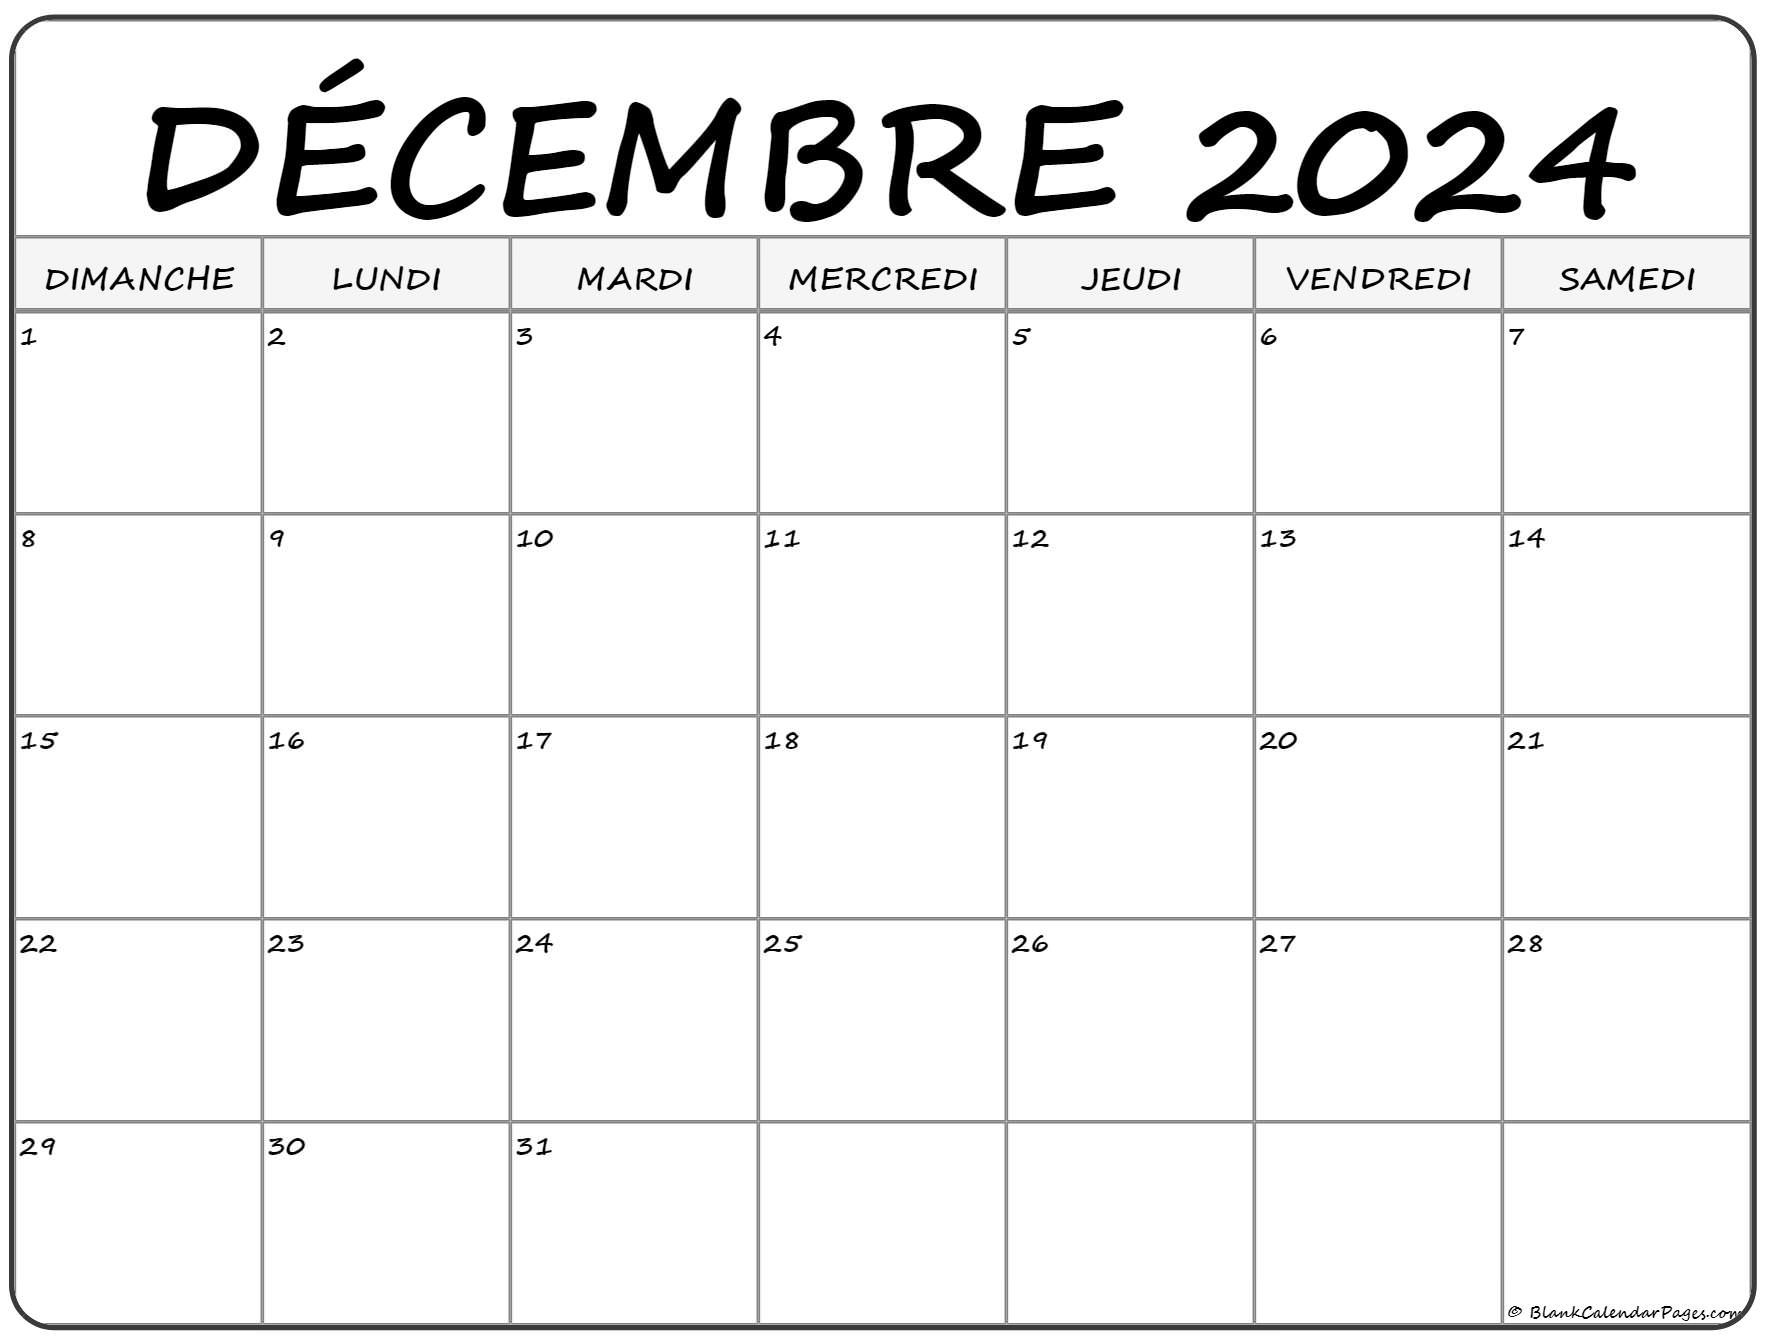 Calendrier Décembre 2022 à Imprimer décembre 2022 calendrier imprimable | Calendrier gratuit